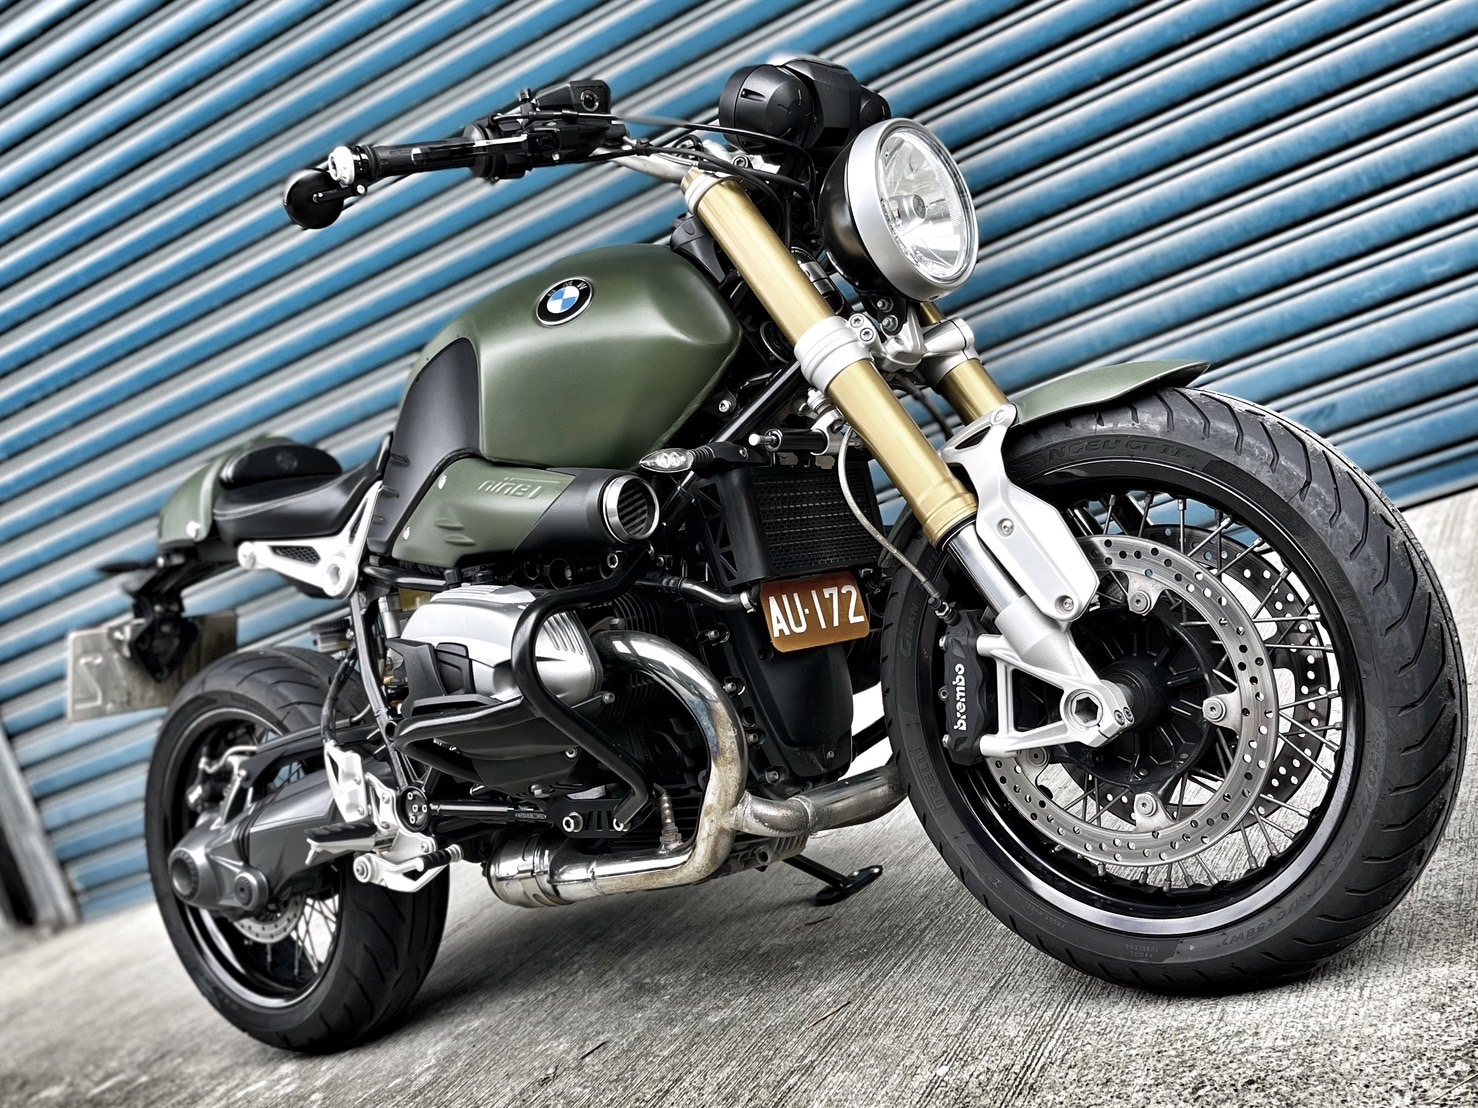 【小資族二手重機買賣】BMW R nineT - 「Webike-摩托車市」 視覺改裝 無摔無事故 里程保証 小資族二手重機買賣